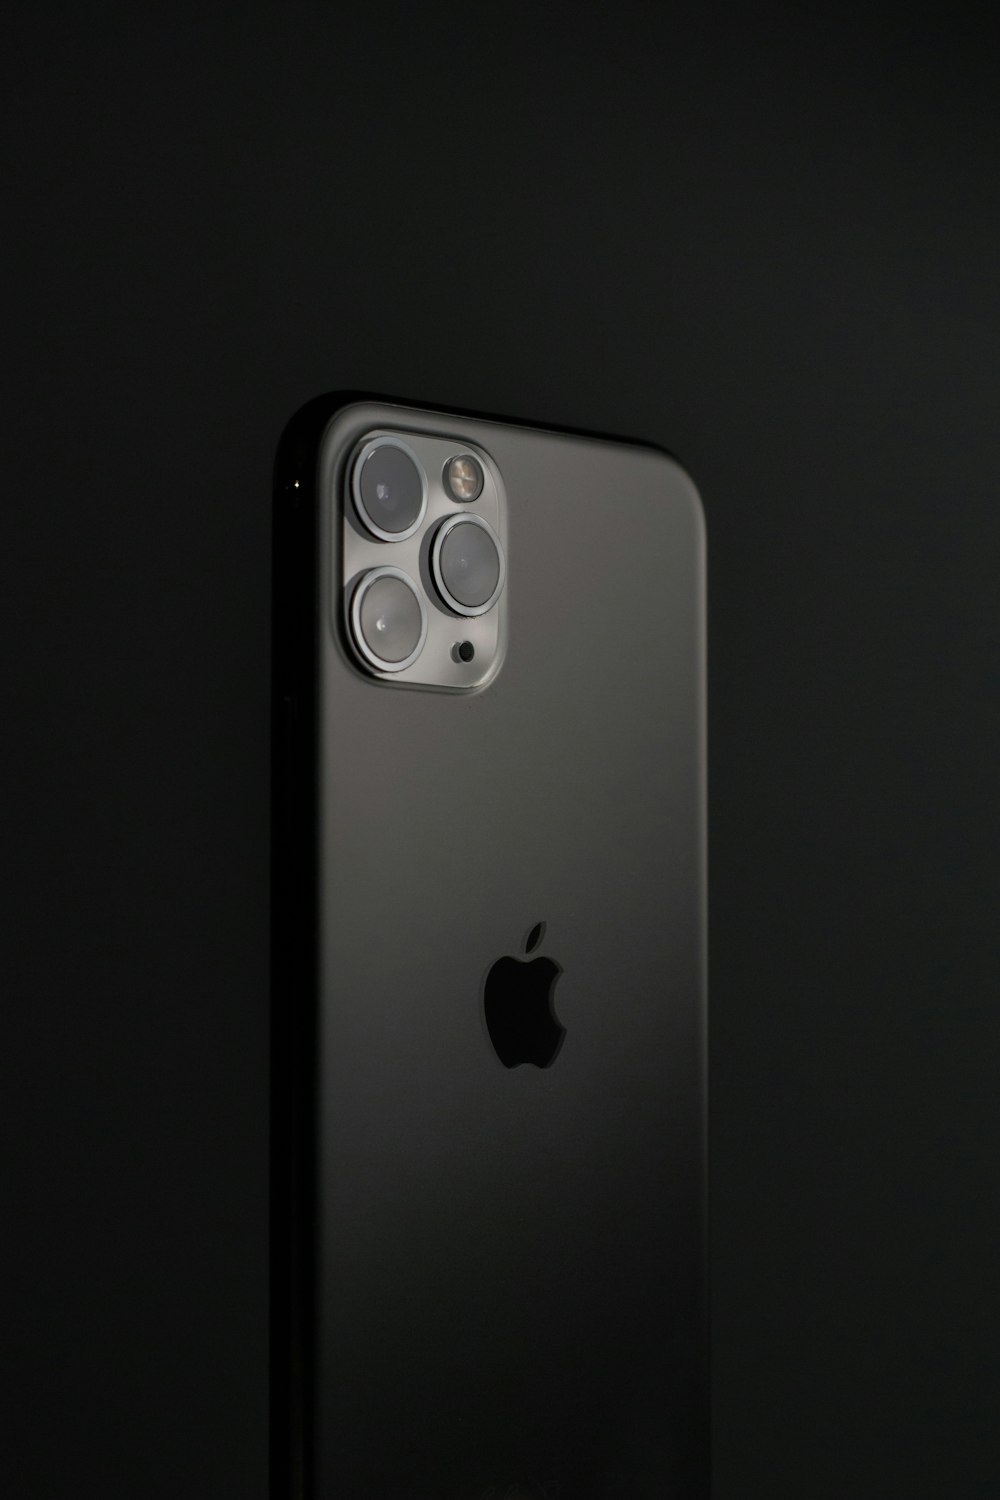 黒い表面にシルバーのiPhone 6